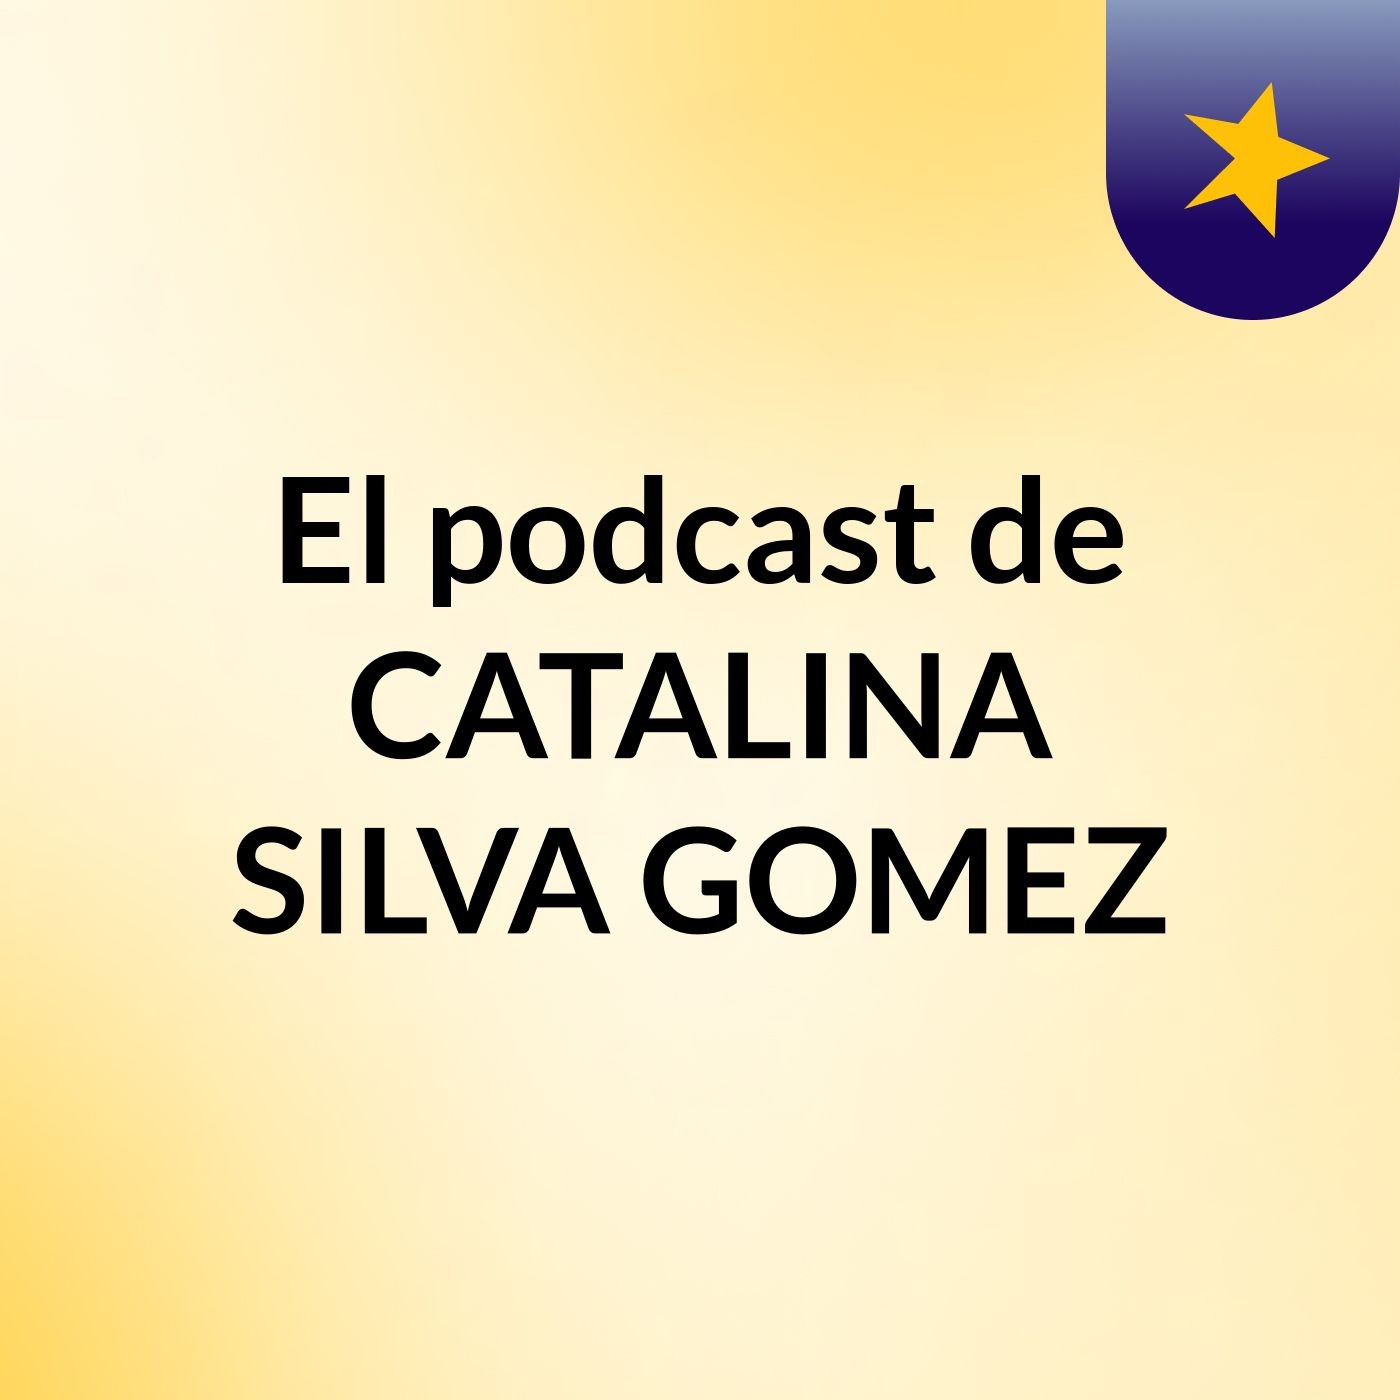 Inglés Advantages And Disadvantages El podcast de CATALINA SILVA GOMEZ